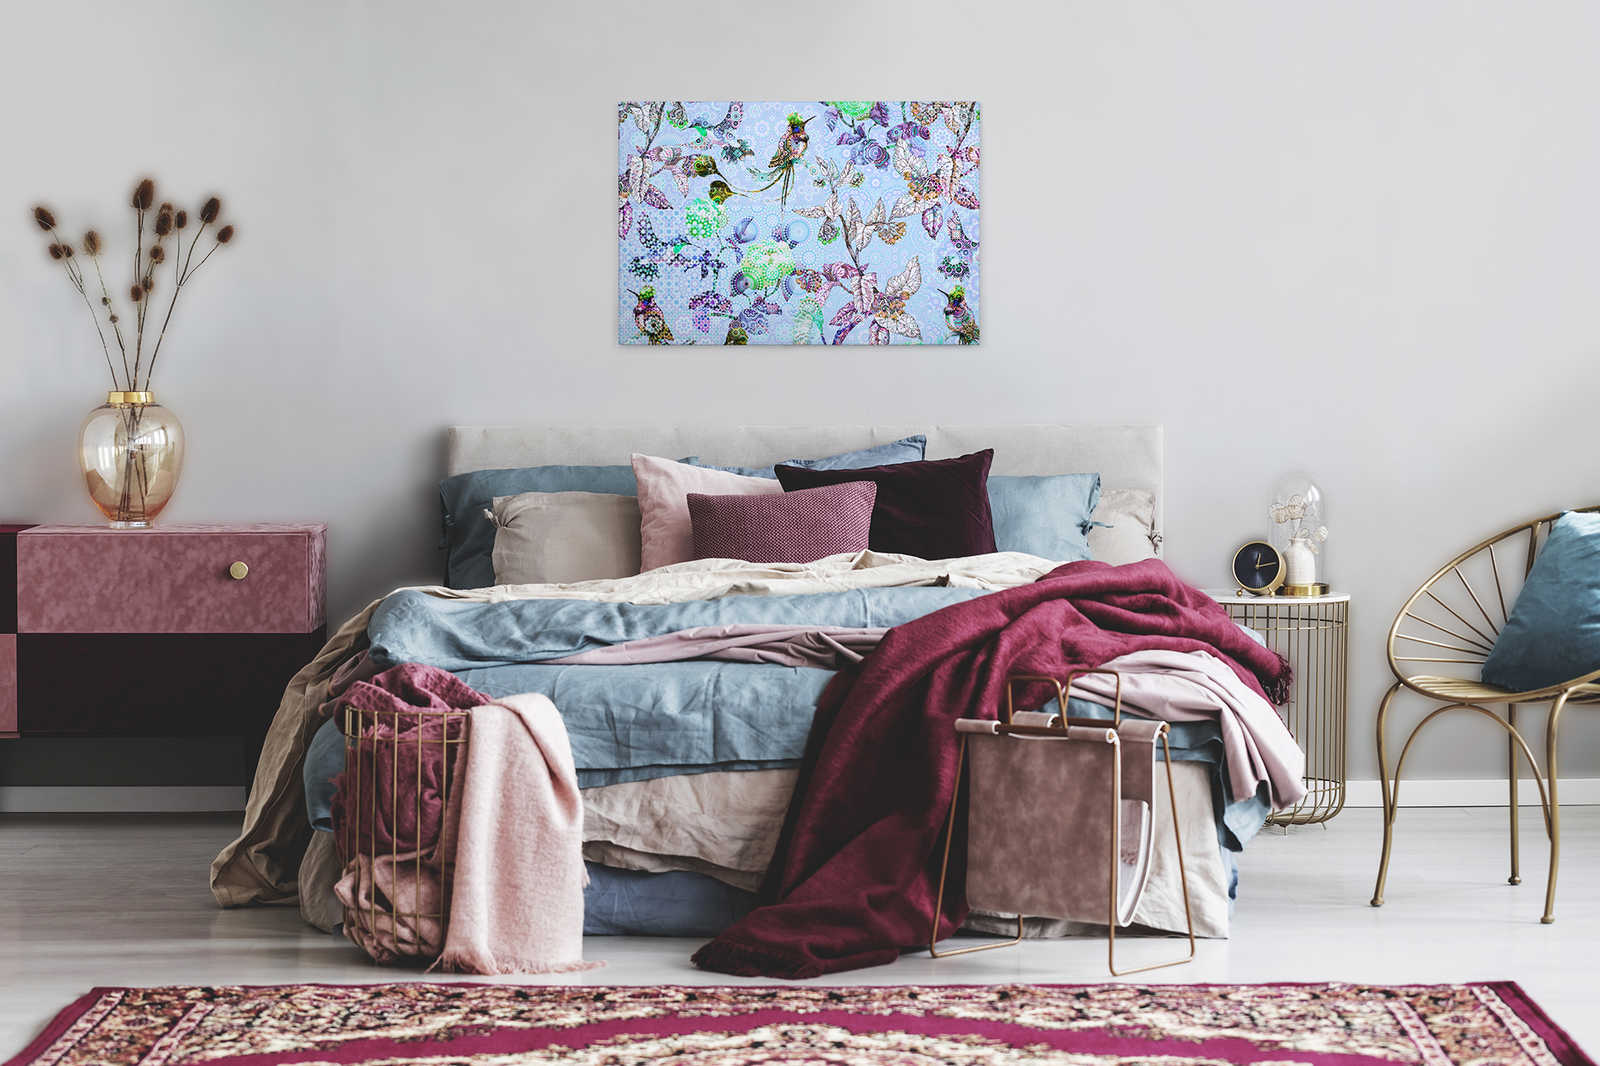             Tableau toile Fleurs & oiseaux style mosaïque - 0,90 m x 0,60 m
        